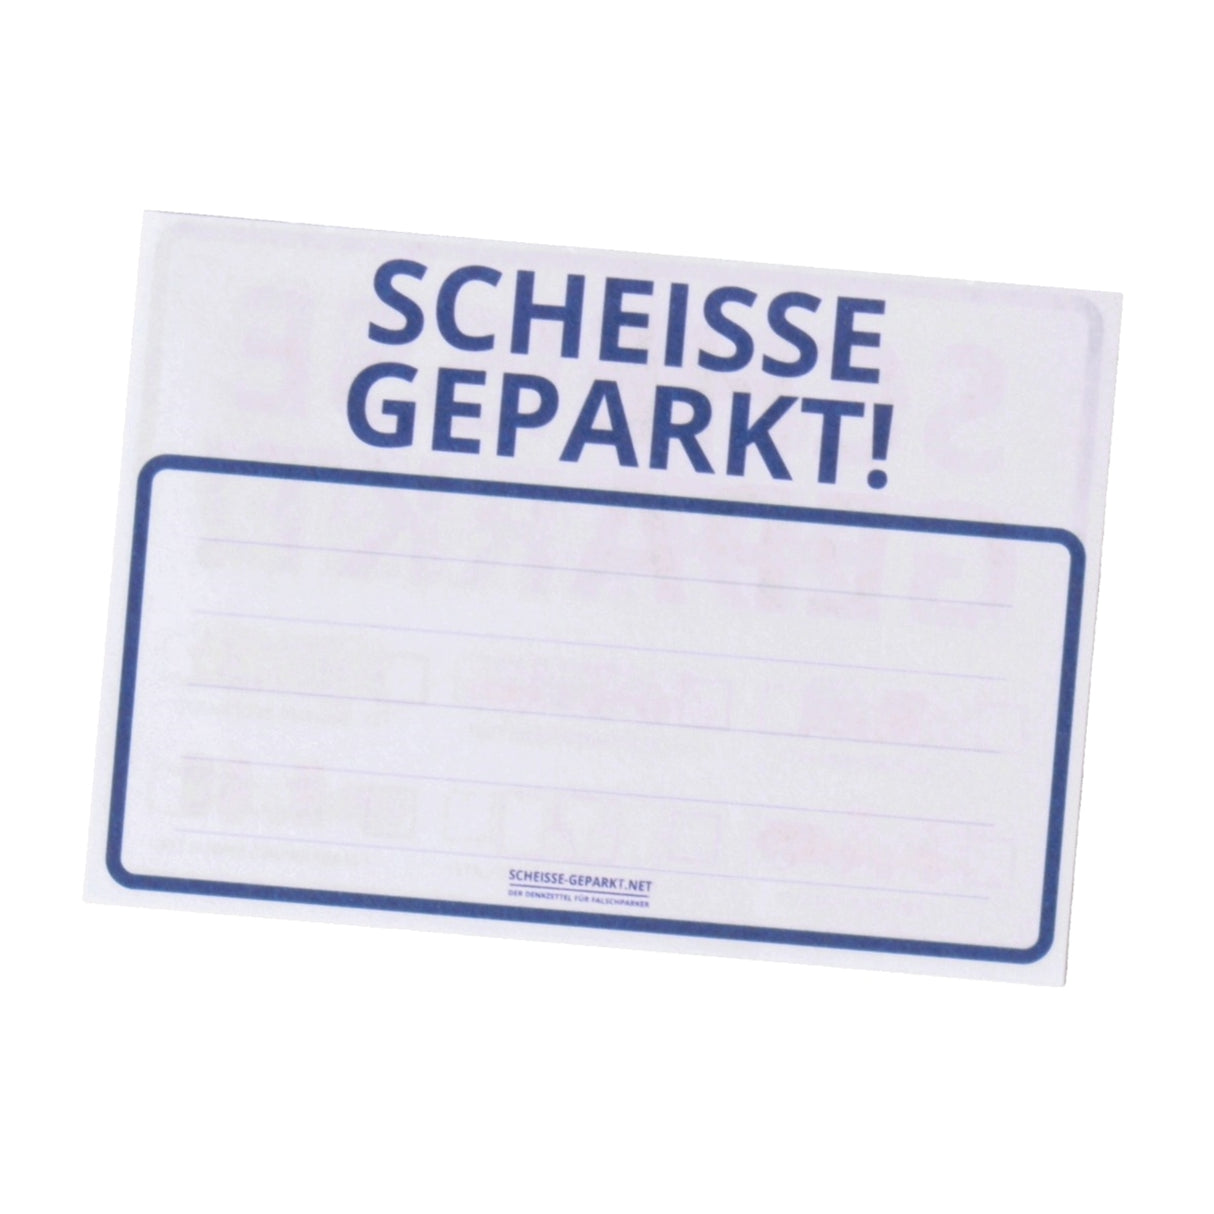 Scheiße Geparkt! Comic Edition Notizblock - 50er Set - Jetzt